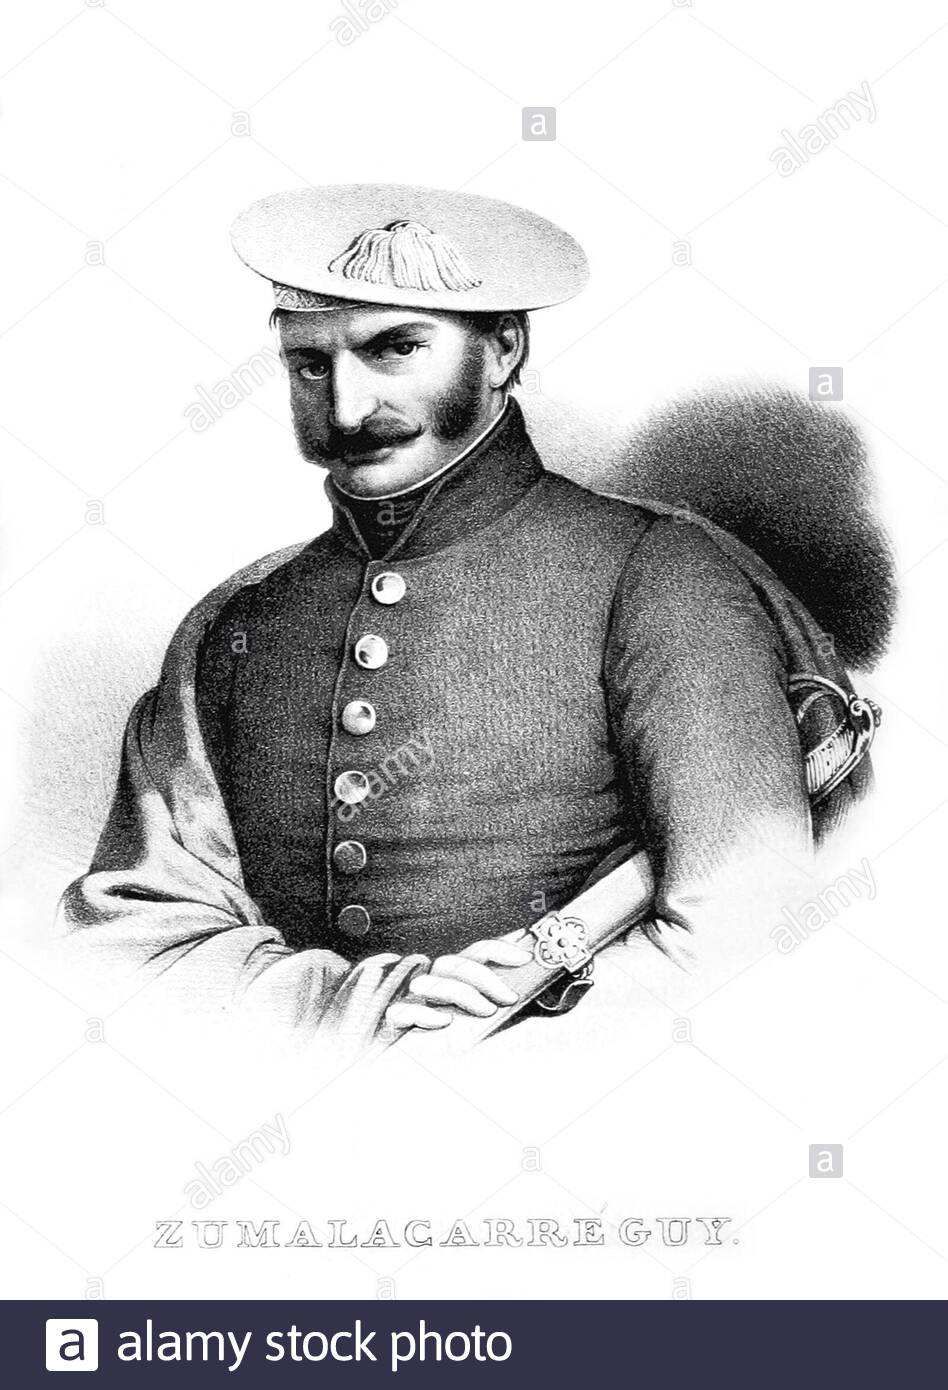 Tomás de Zumalacárregui e Imaz ritratto, 1788 – 1835, è stato un ufficiale basco spagnolo che ha guidato la fazione carlista come capitano generale dell'esercito durante la prima guerra carlista, illustrazione d'epoca dal 1835 Foto Stock